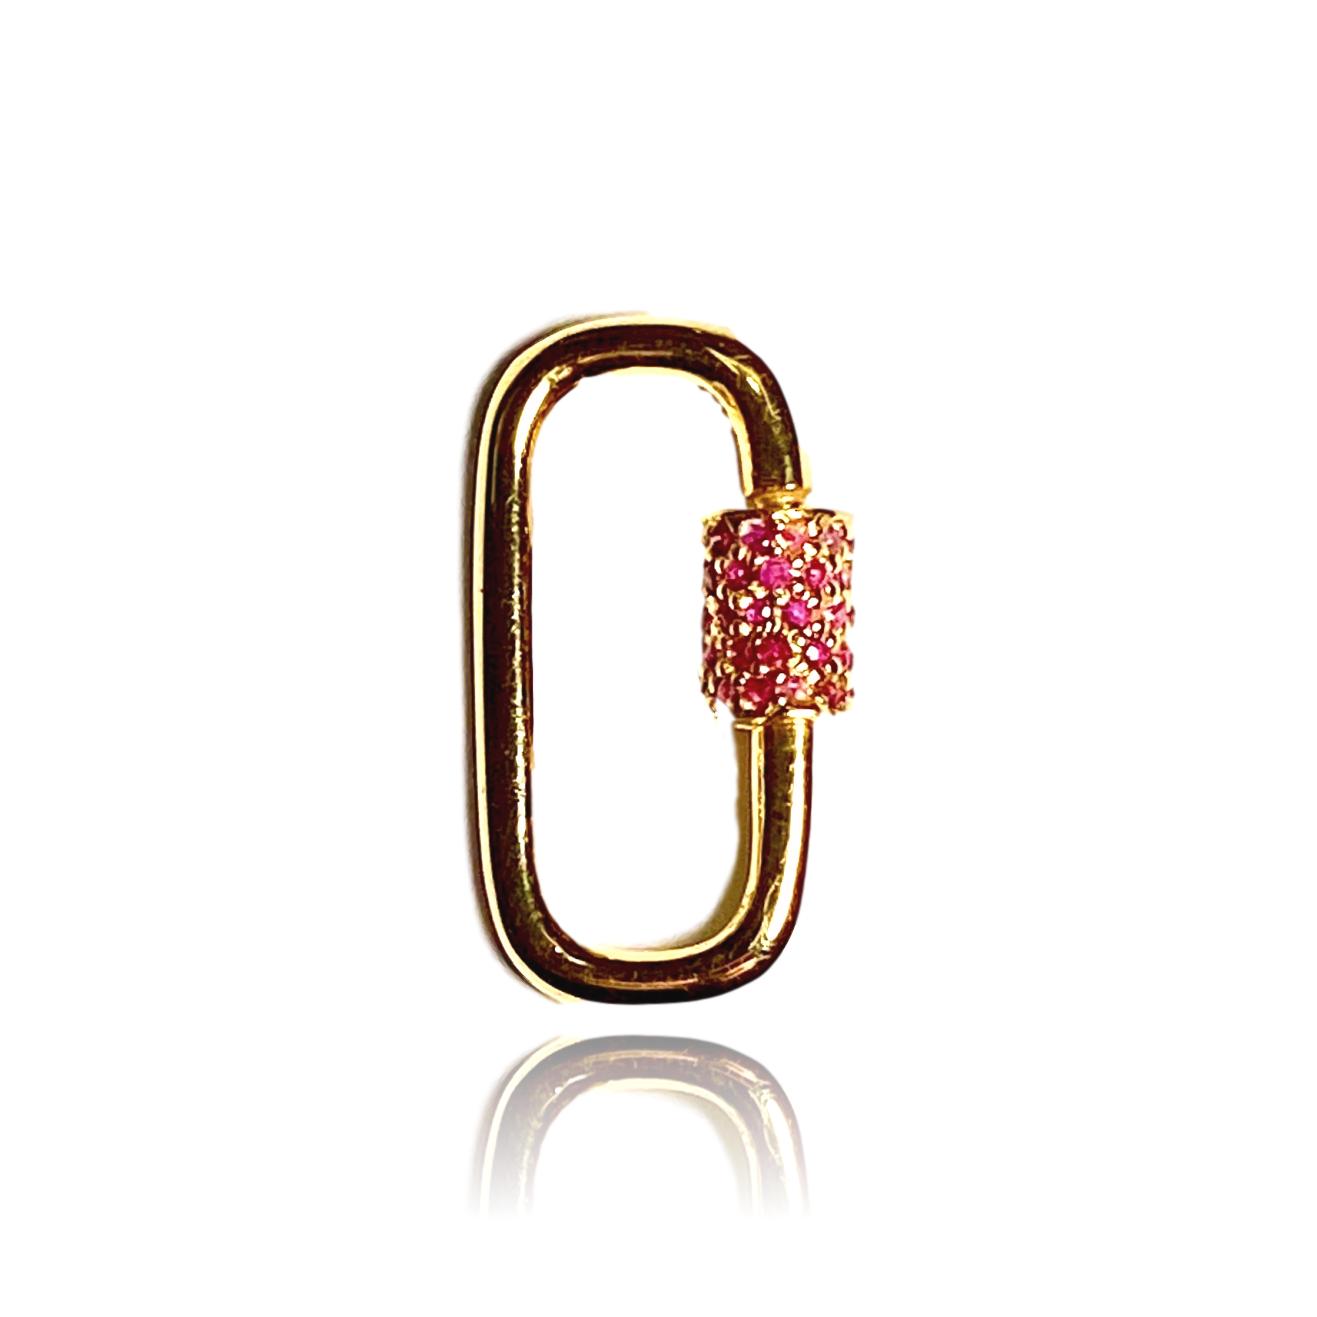 Pink Sapphire Carabiner Lock - Lauren Sigman Collection